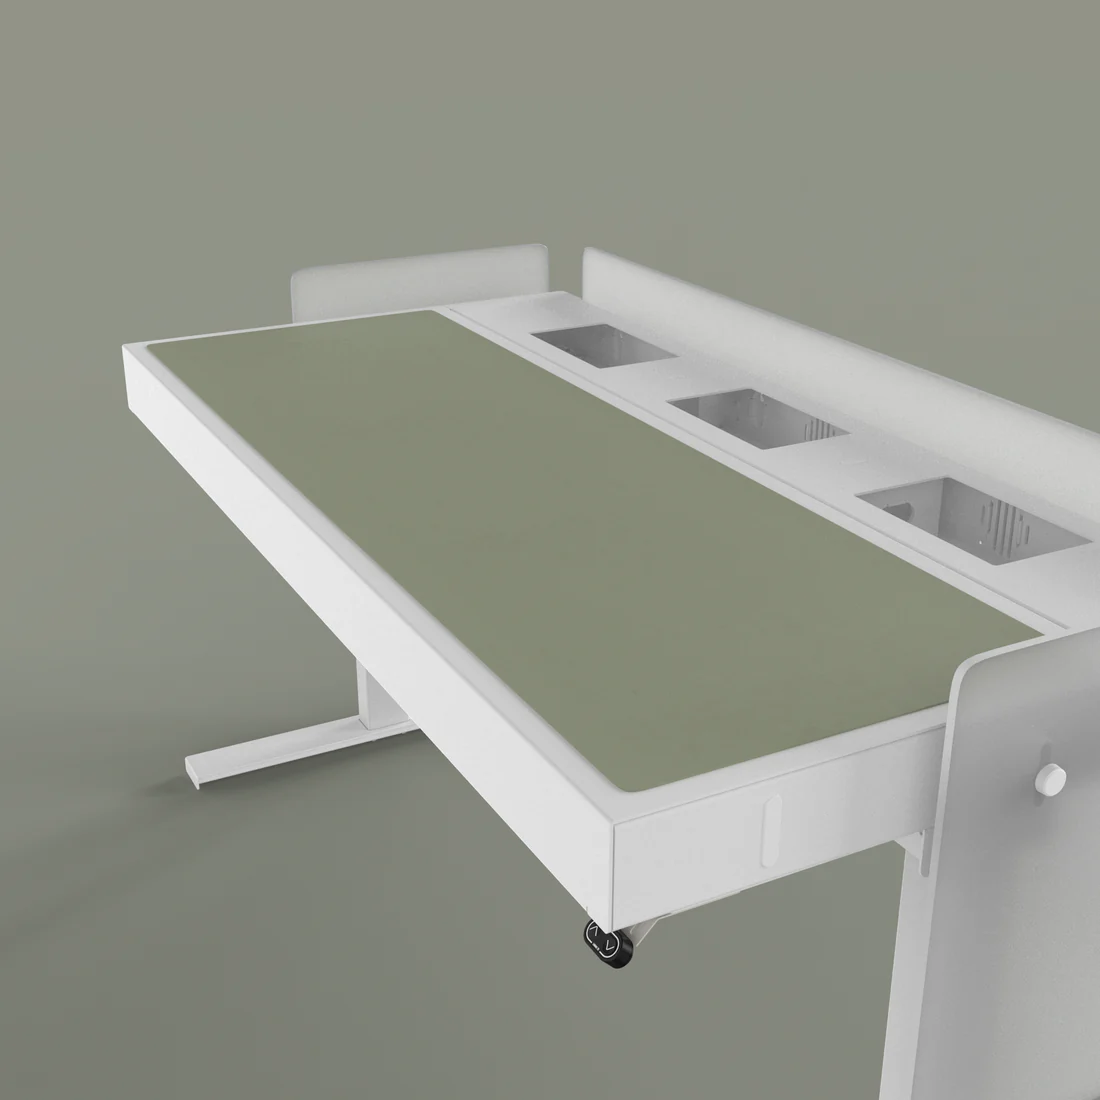 H902-4184 Desk Pad - Olive